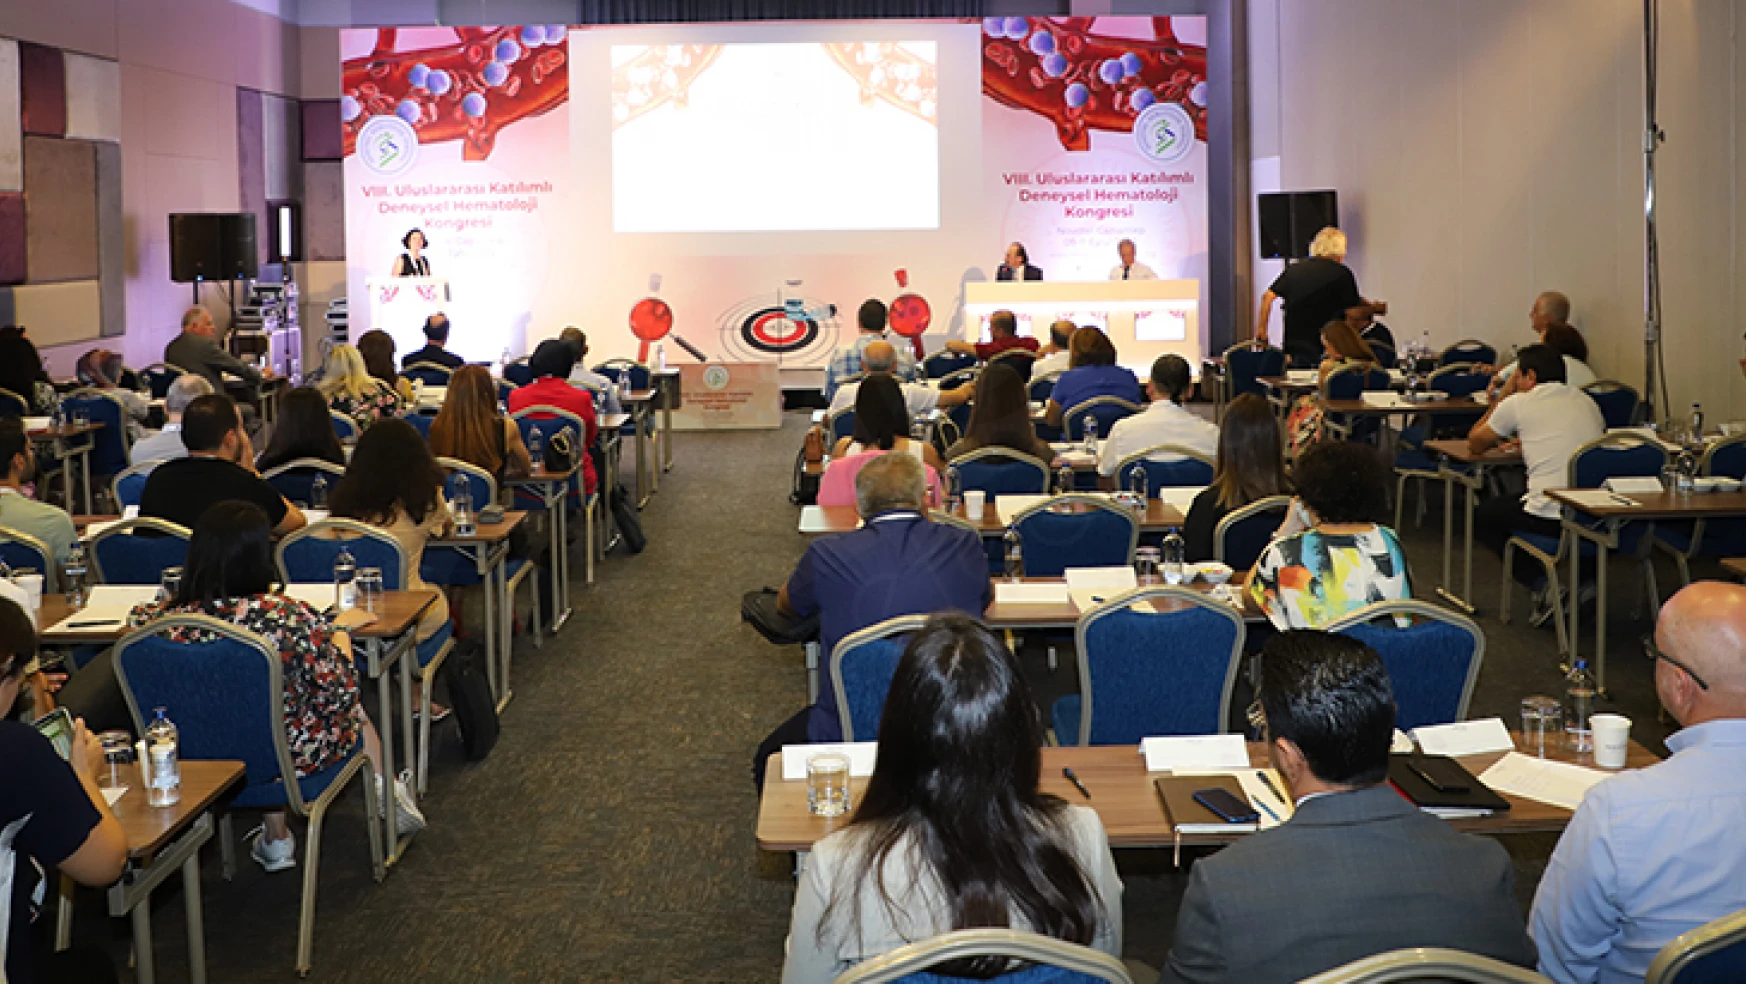 8. Uluslararası Katılımlı Deneysel Hematoloji Kongresi